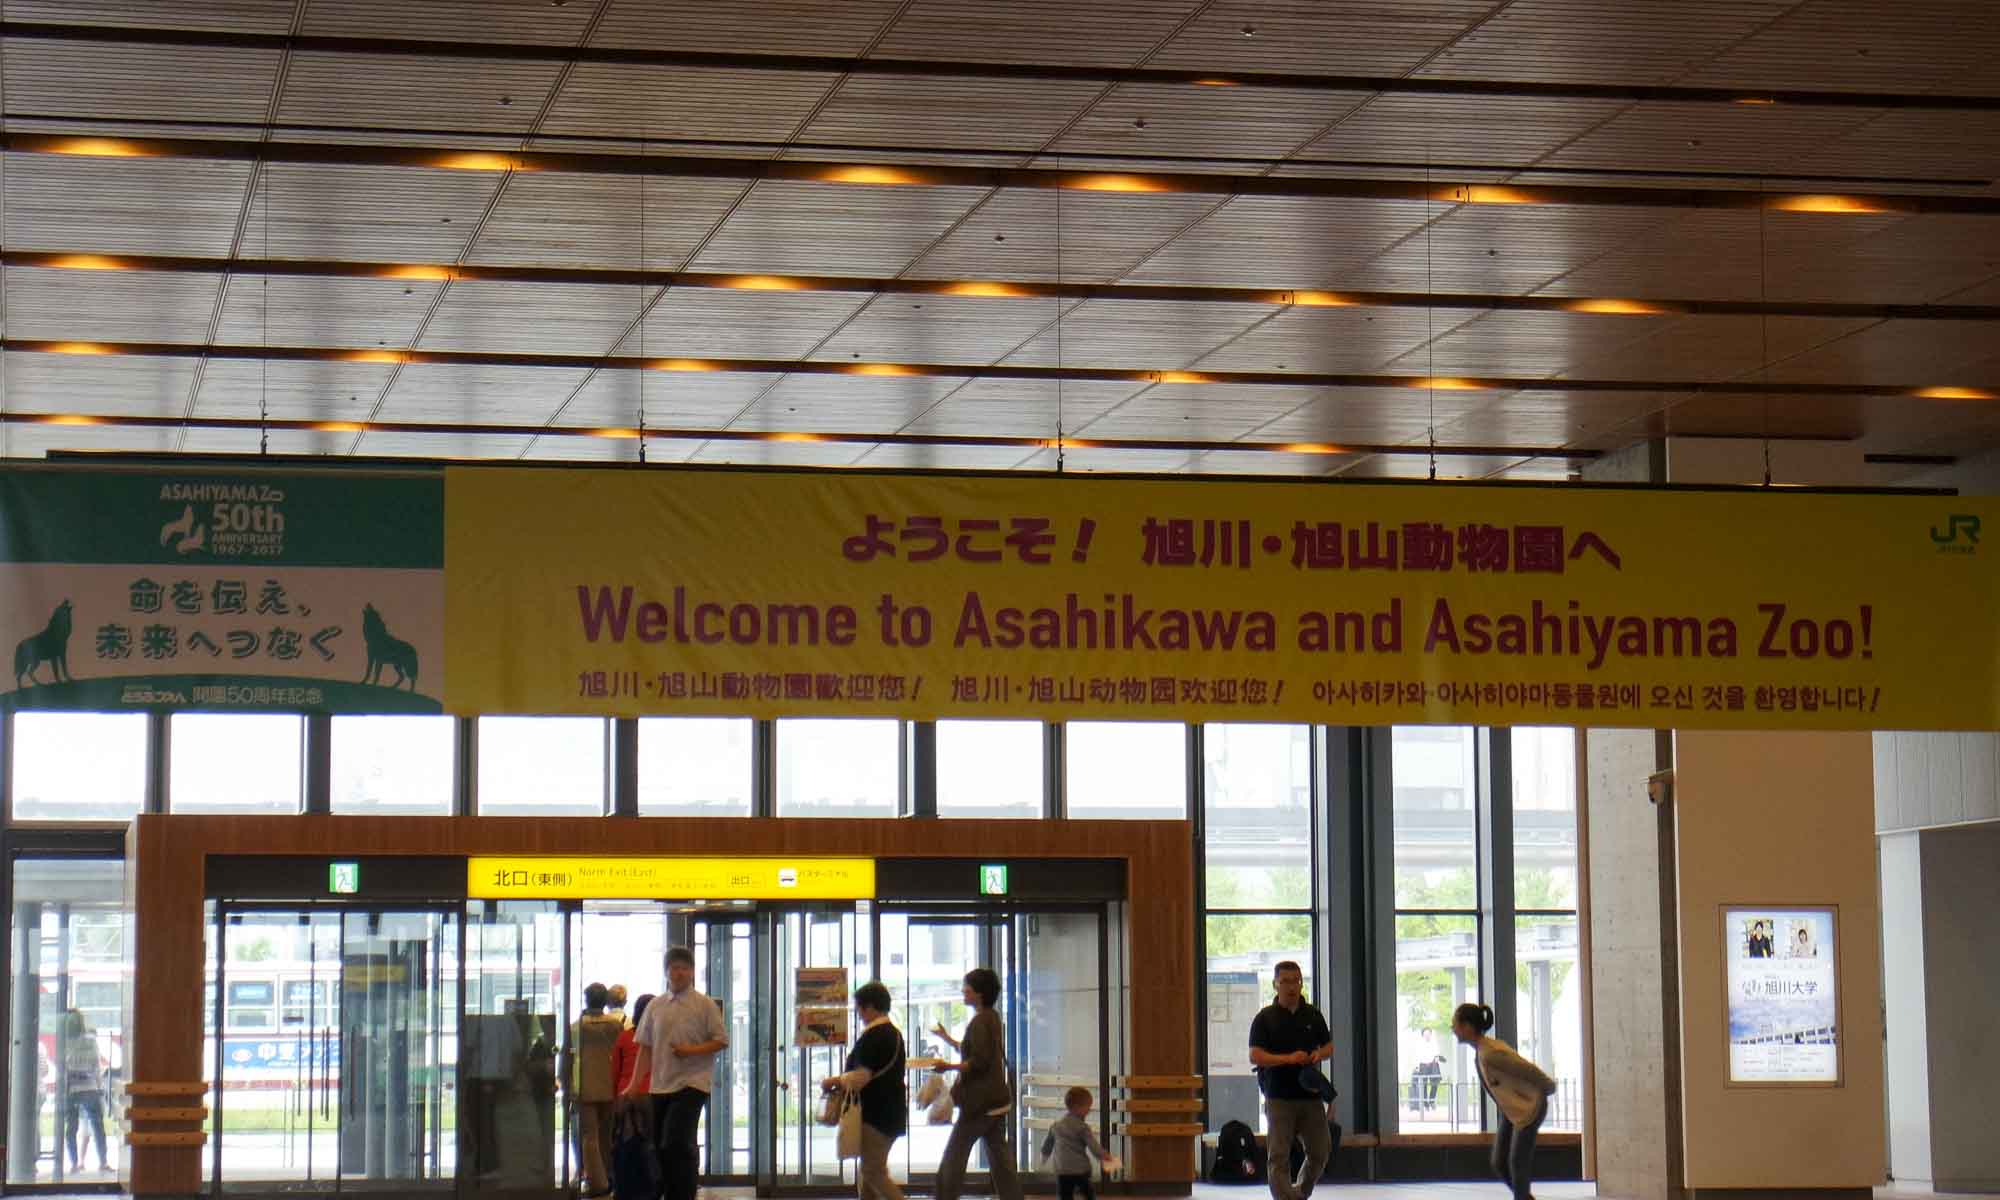 JR Asahikawa station